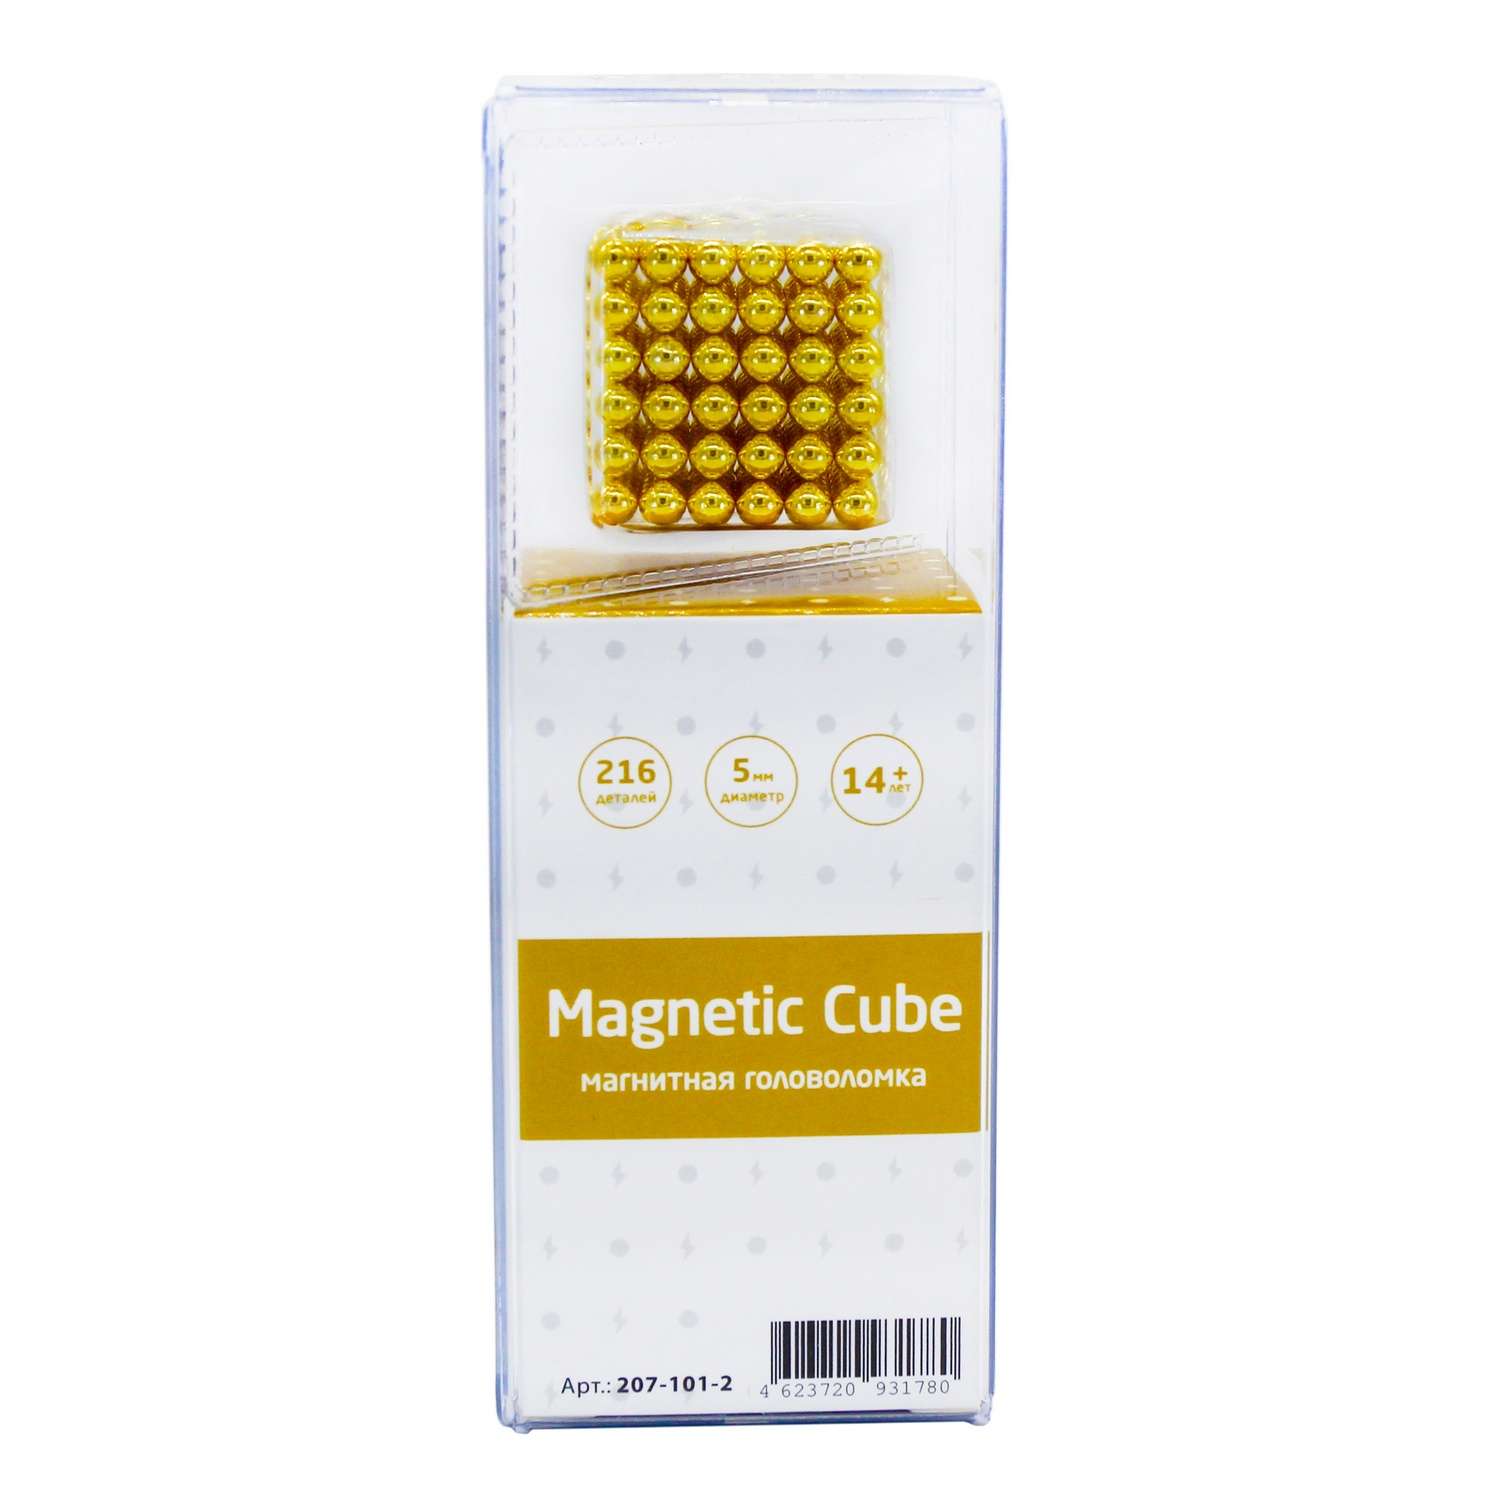 Головоломка магнитная Magnetic Cube золотой неокуб 216 элементов - фото 3